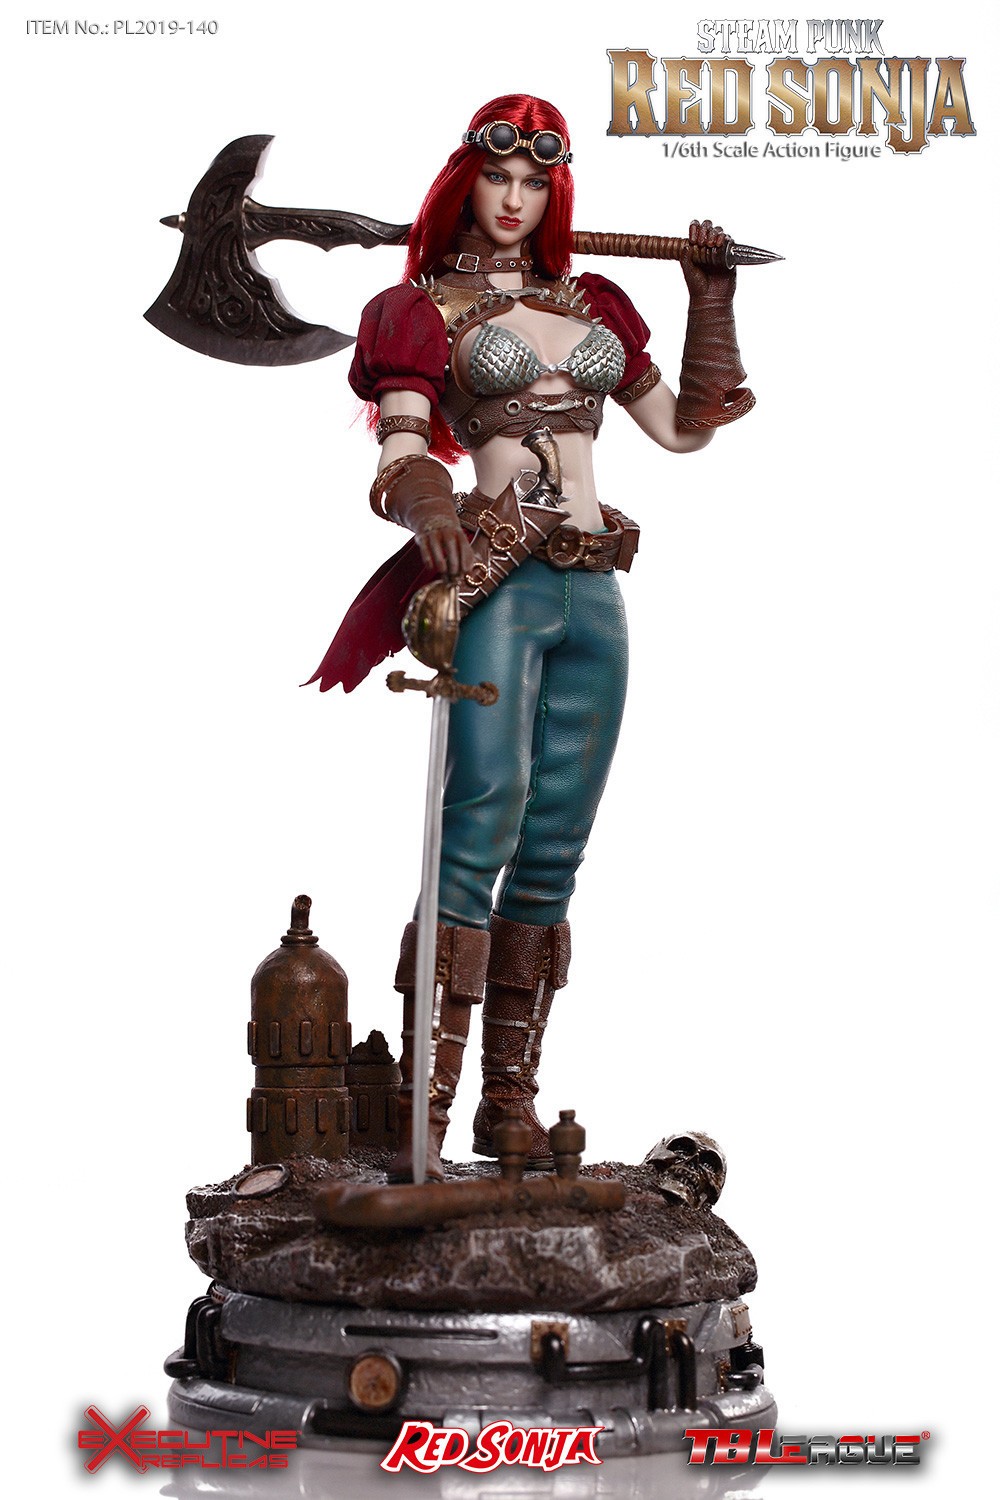 Figurine articulée ARH Studios Red Sonja: figurine Deluxe Steampunk Re